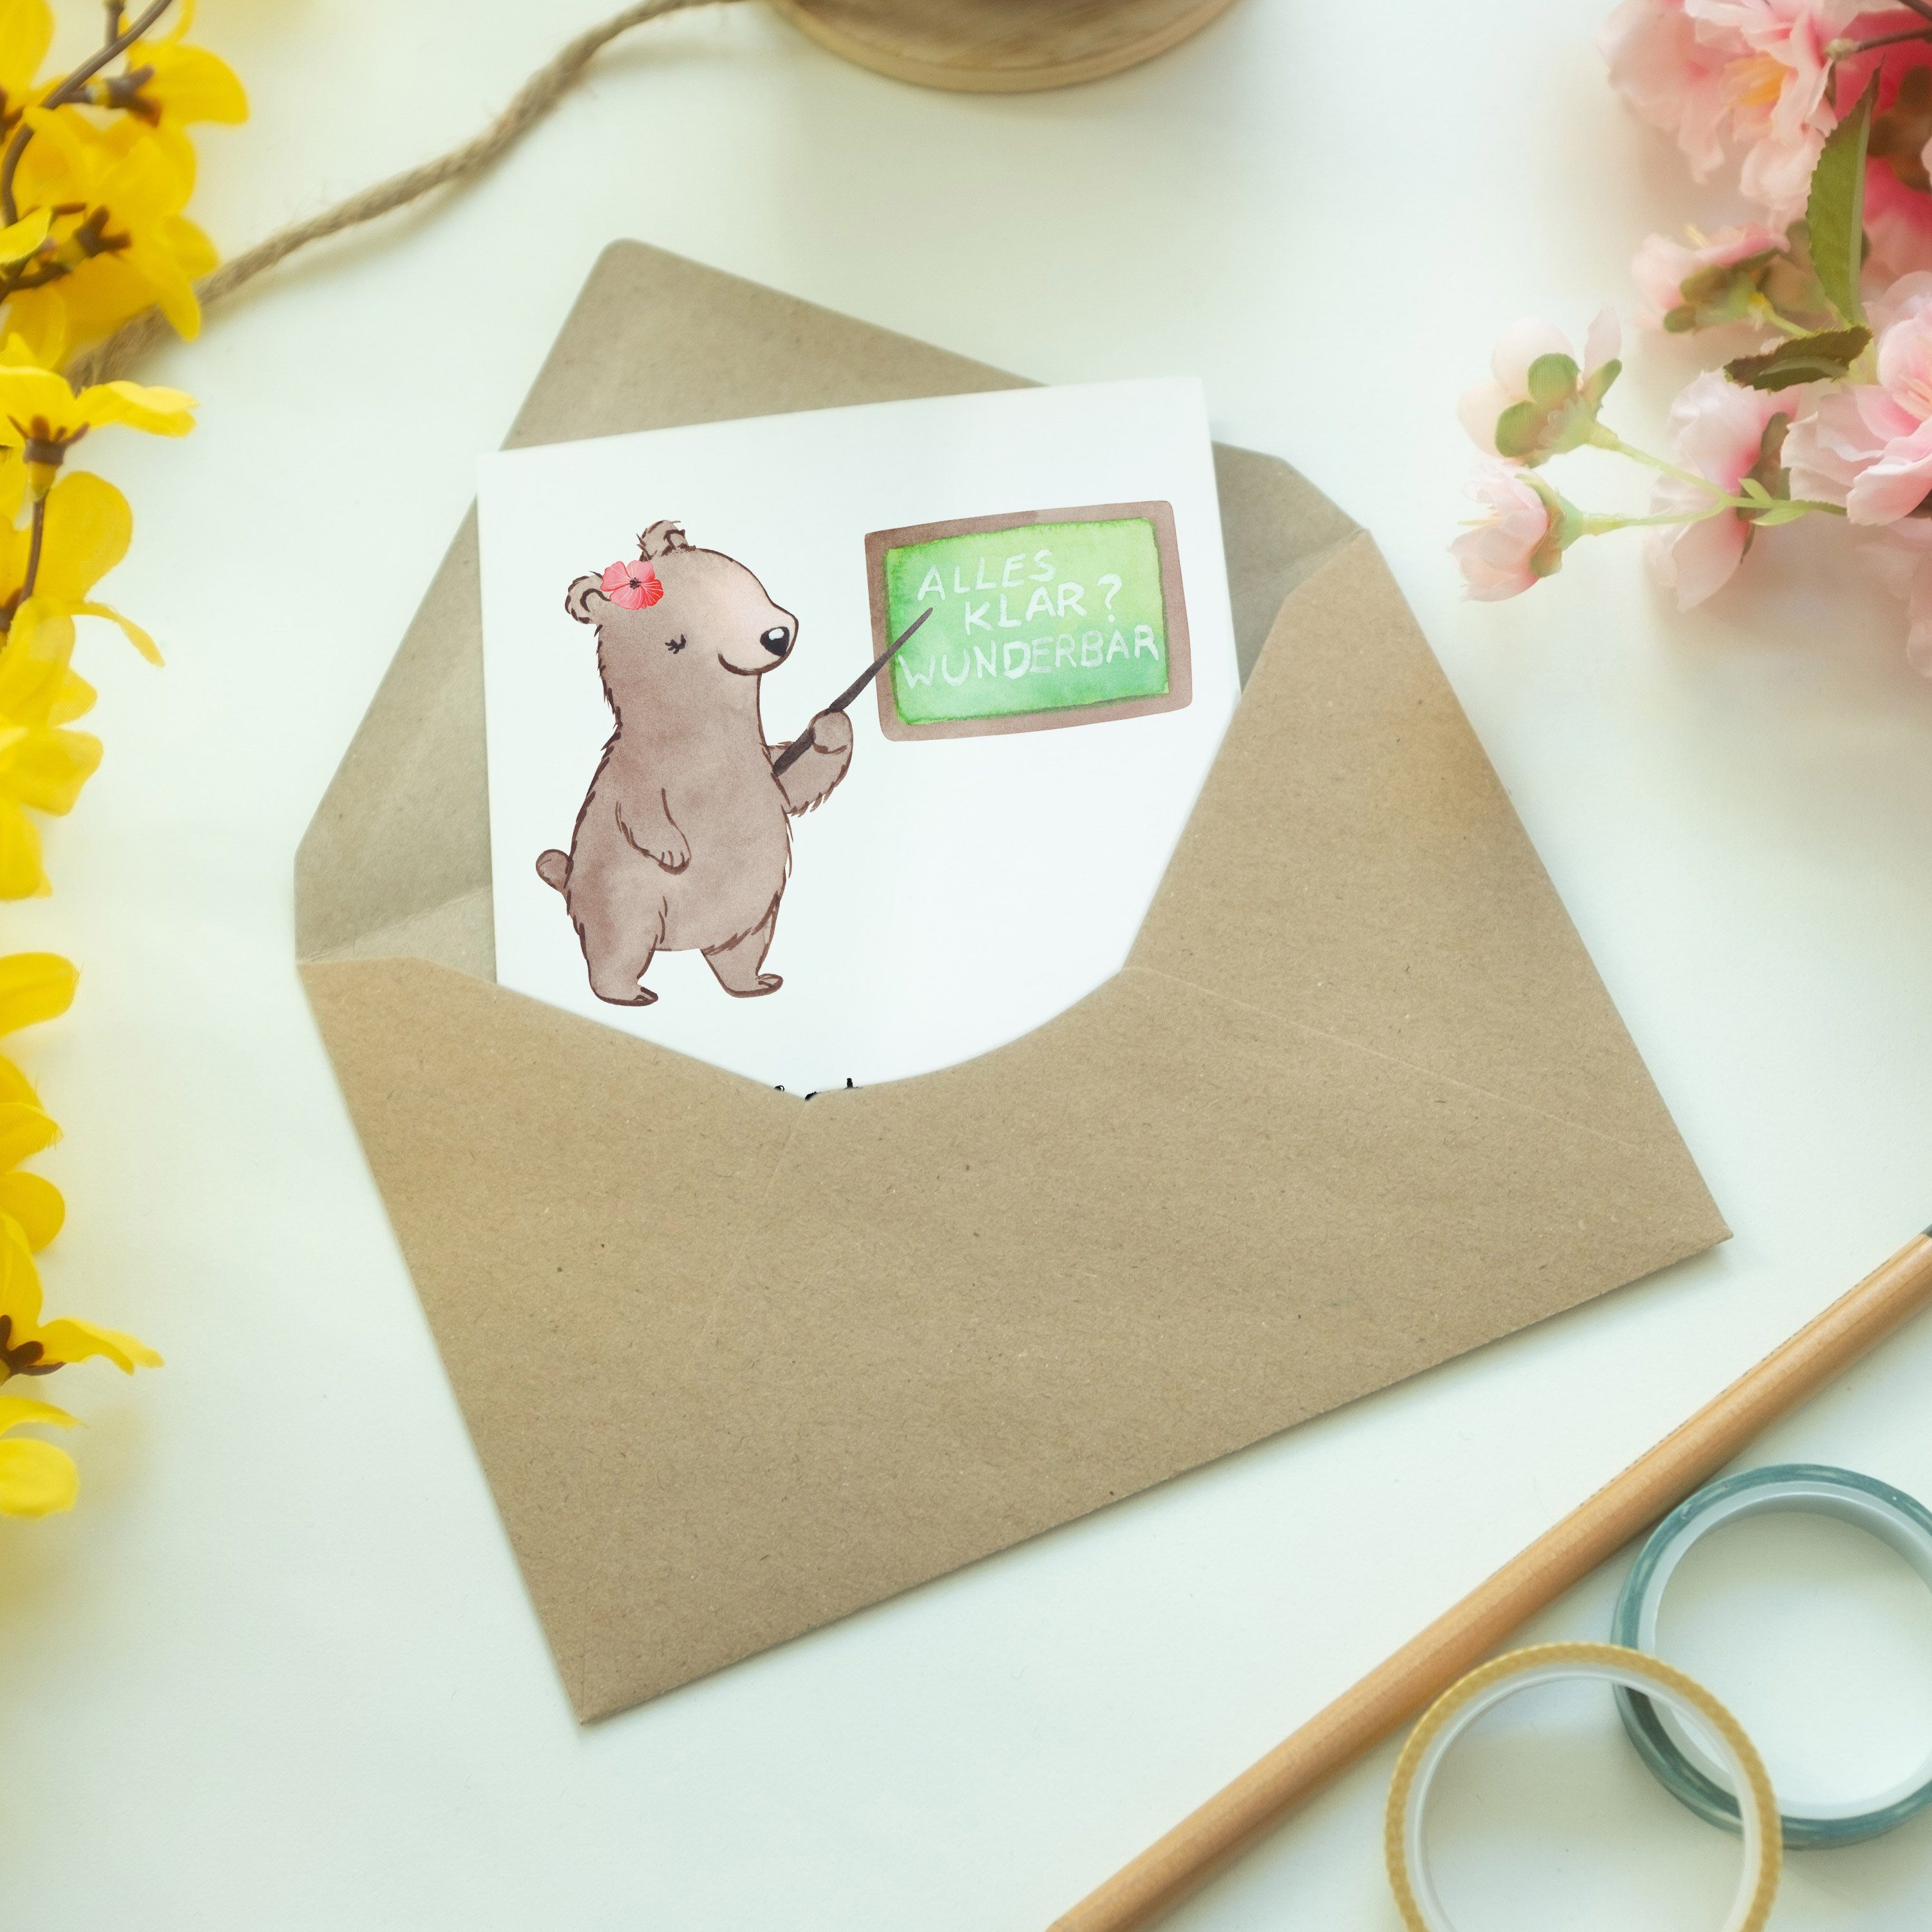 Panda Mr. Hochzeitskarte, - Mrs. Deutschlehrerin Geschenk, Schule, Grußkarte & Weiß Herz - mit K